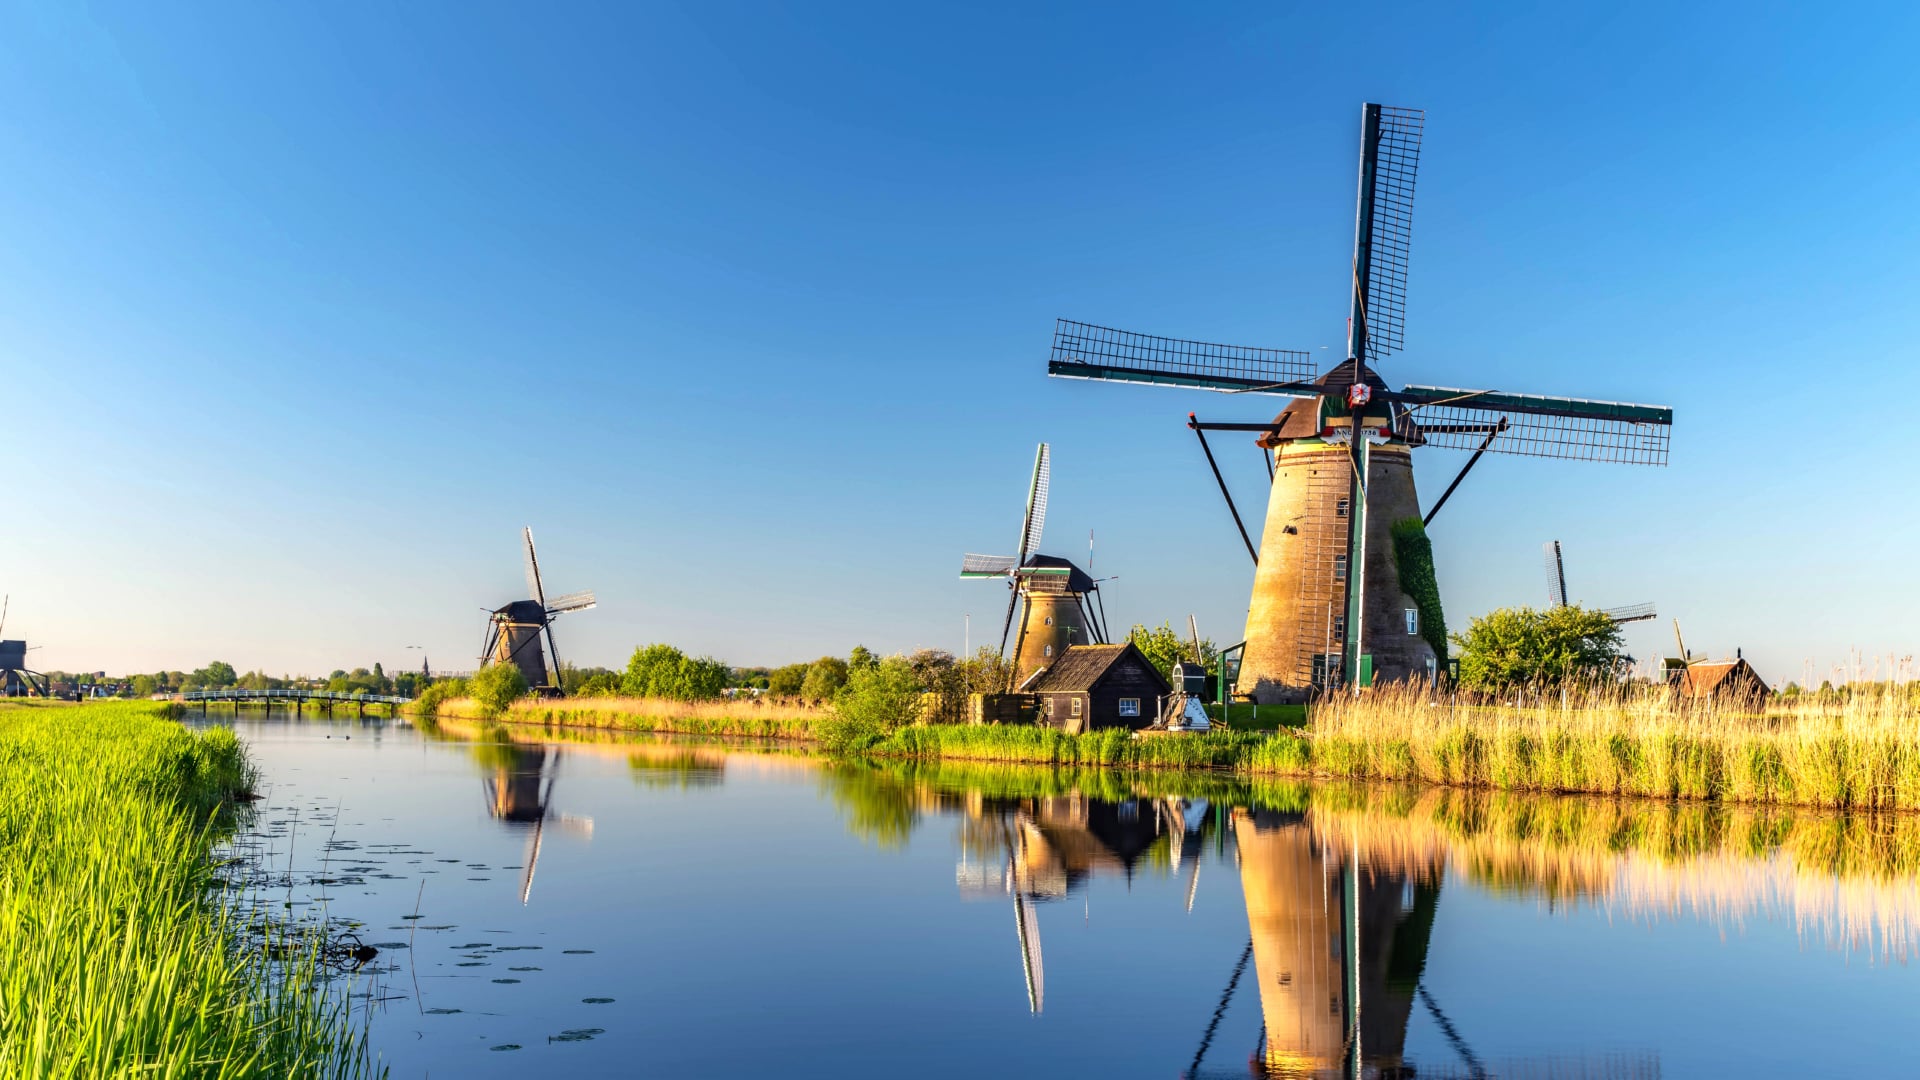 Windmills at Kinderdijk at 1600 x 1200 size wallpapers HD quality